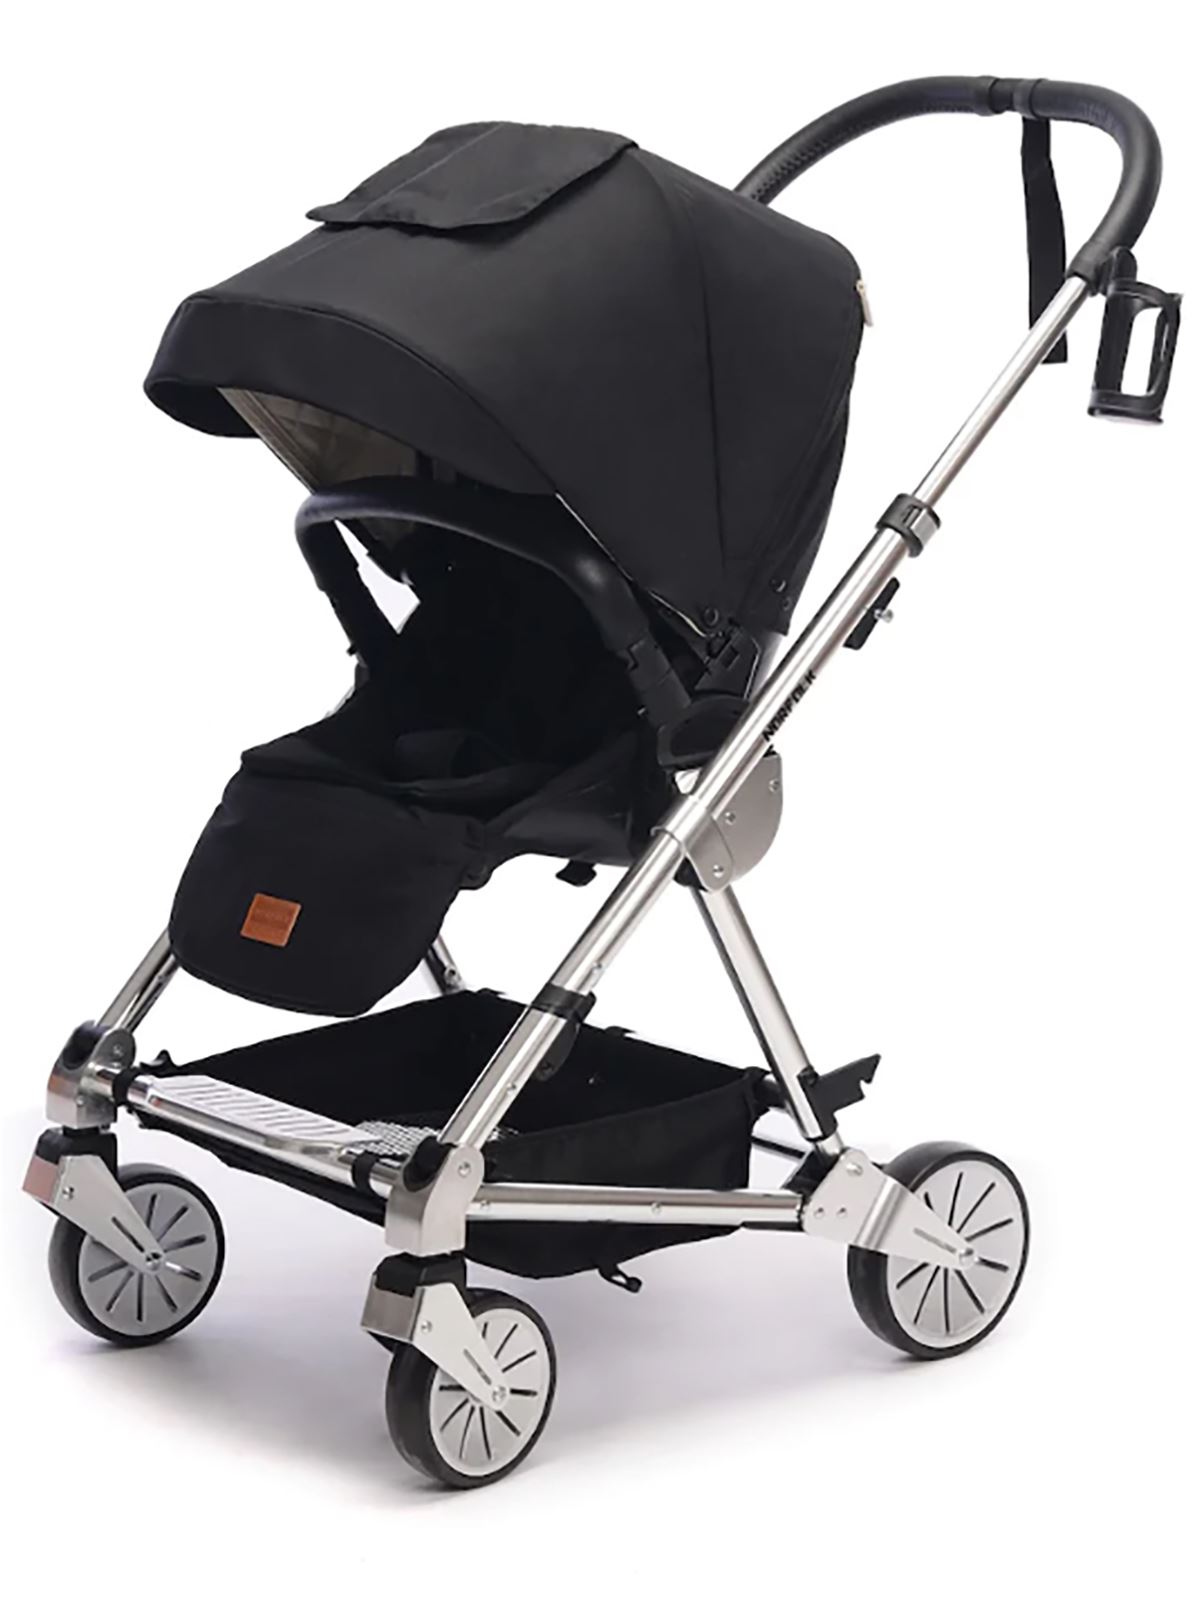 Norfolk Baby Prelude Special Edition Air Luxury Çift Yönlü Bebek Arabası Siyah